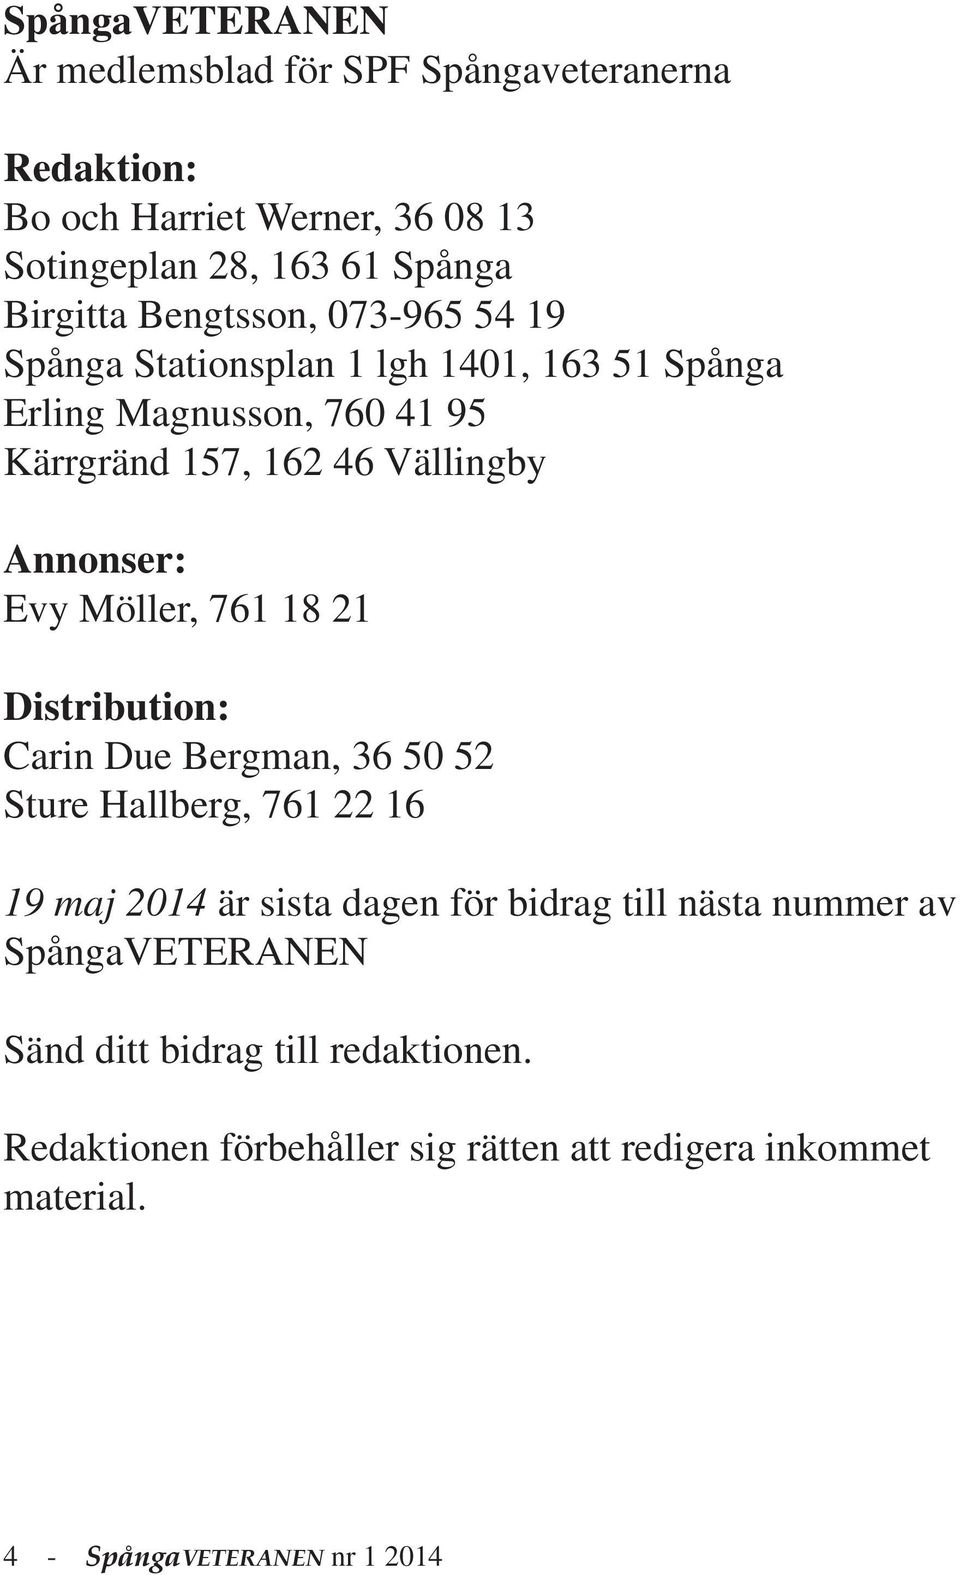 Evy Möller, 761 18 21 Distribution: Carin Due Bergman, 36 50 52 Sture Hallberg, 761 22 16 19 maj 2014 är sista dagen för bidrag till nästa